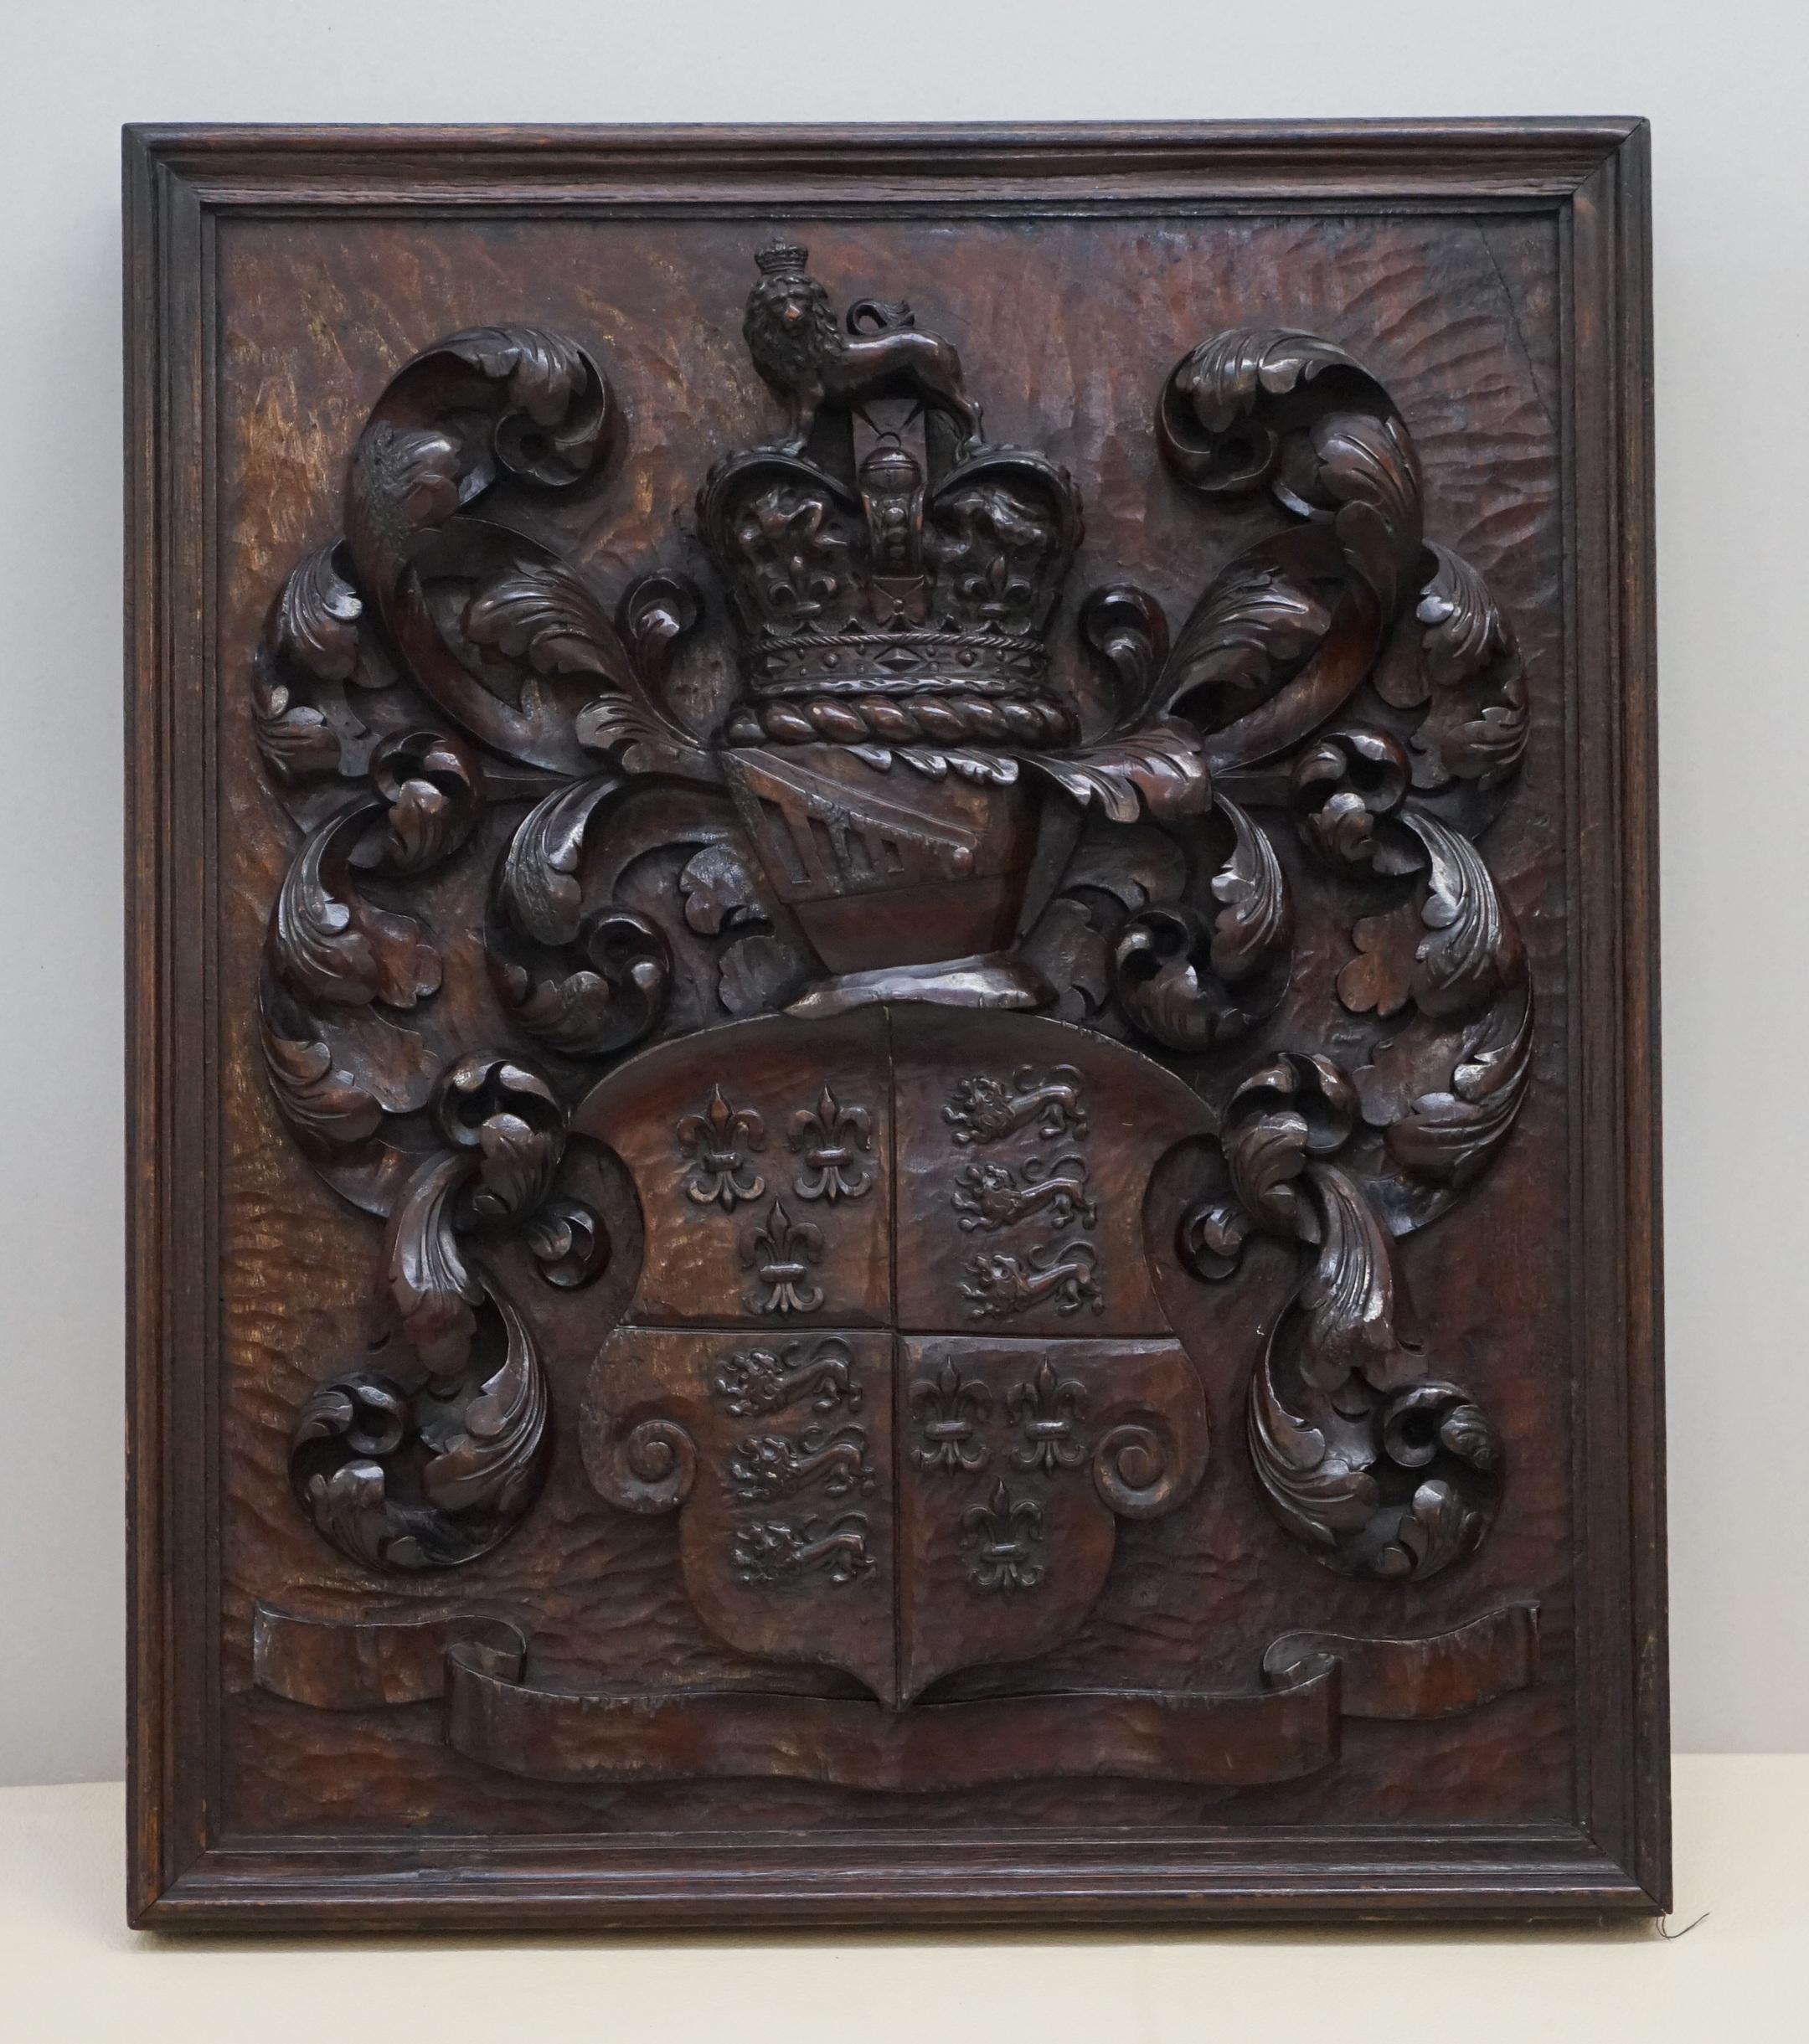 Königshaus Antiquitäten

Royal House Antiques freut sich, dieses atemberaubende und sehr seltene englische Wappen zum Verkauf anbieten zu können, das einen Zeitraum von 1405-1603 abdeckt und in massivem Nussbaumholz aus der Zeit um 1780